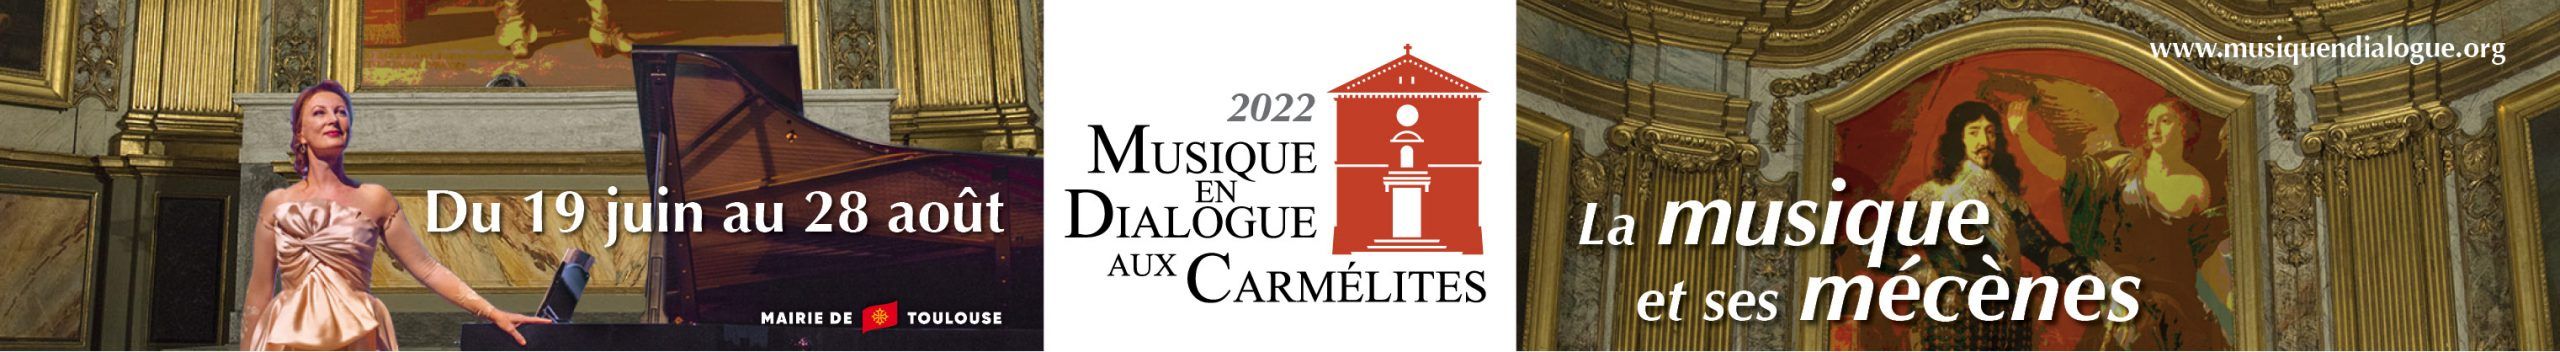 Musique en Dialogue aux Carmélites – Edition 2022